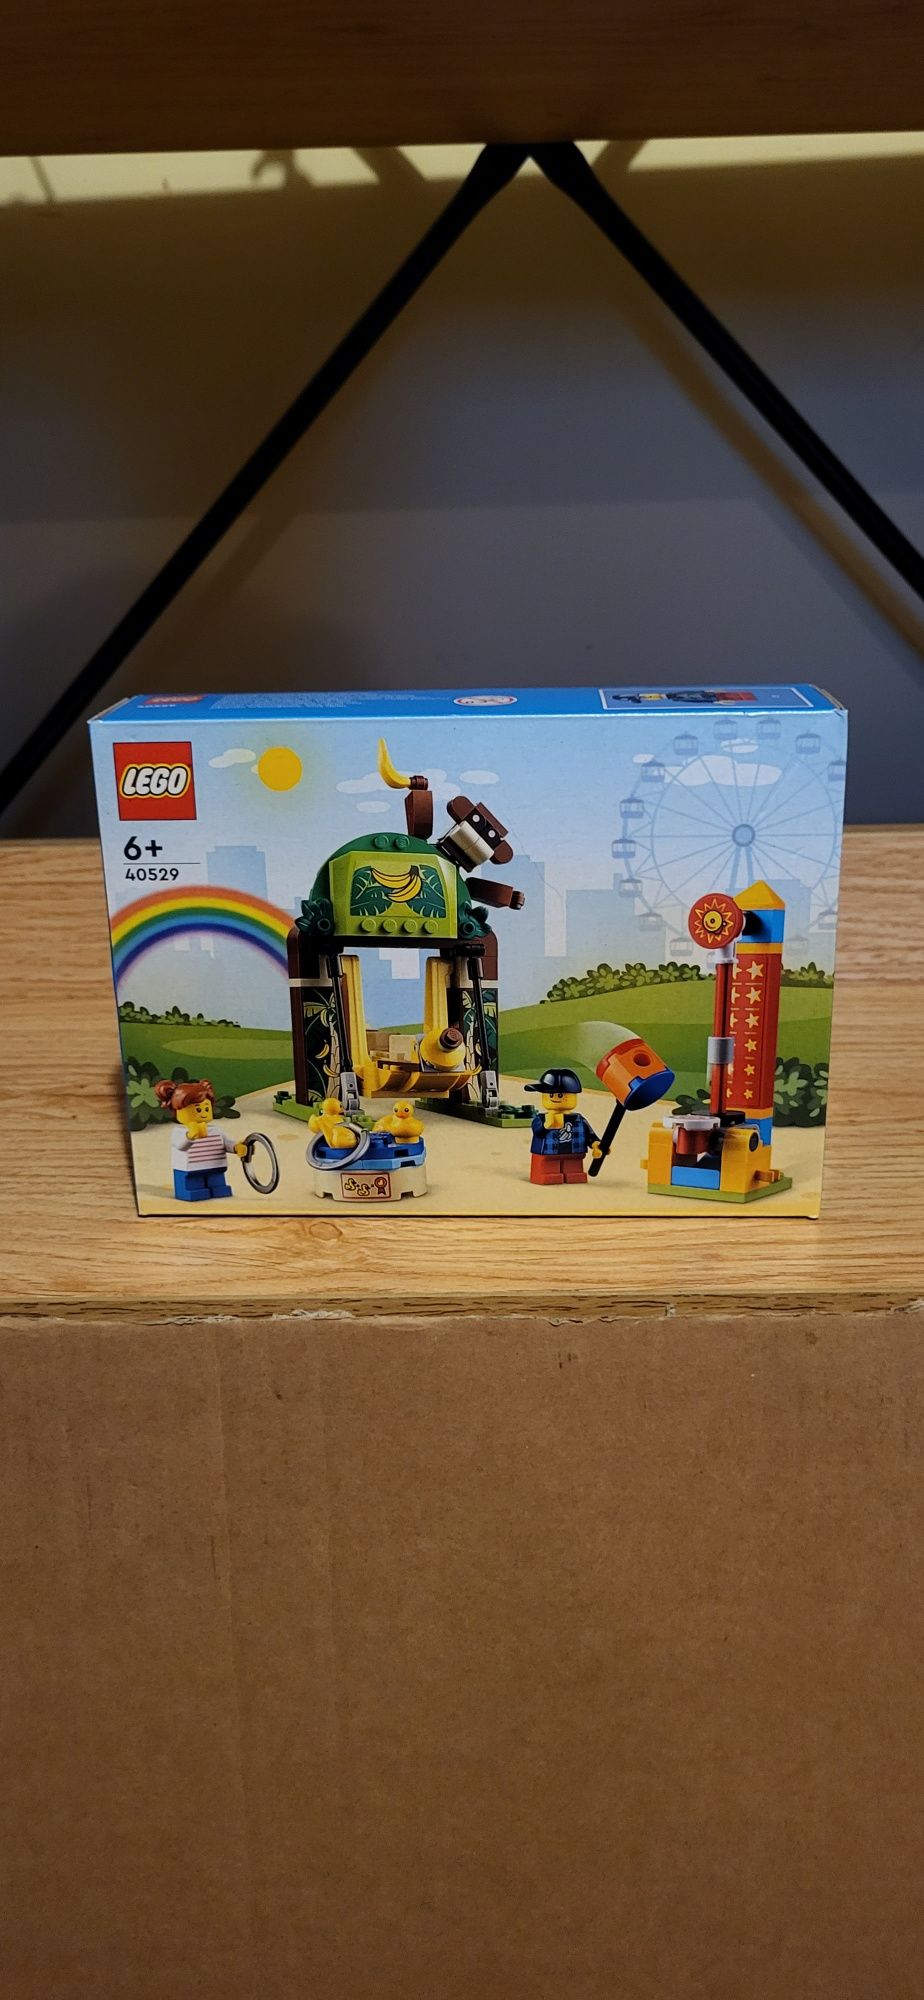 Lego Creator Expert 40529 Park rozrywki dla dzieci nowy zestaw